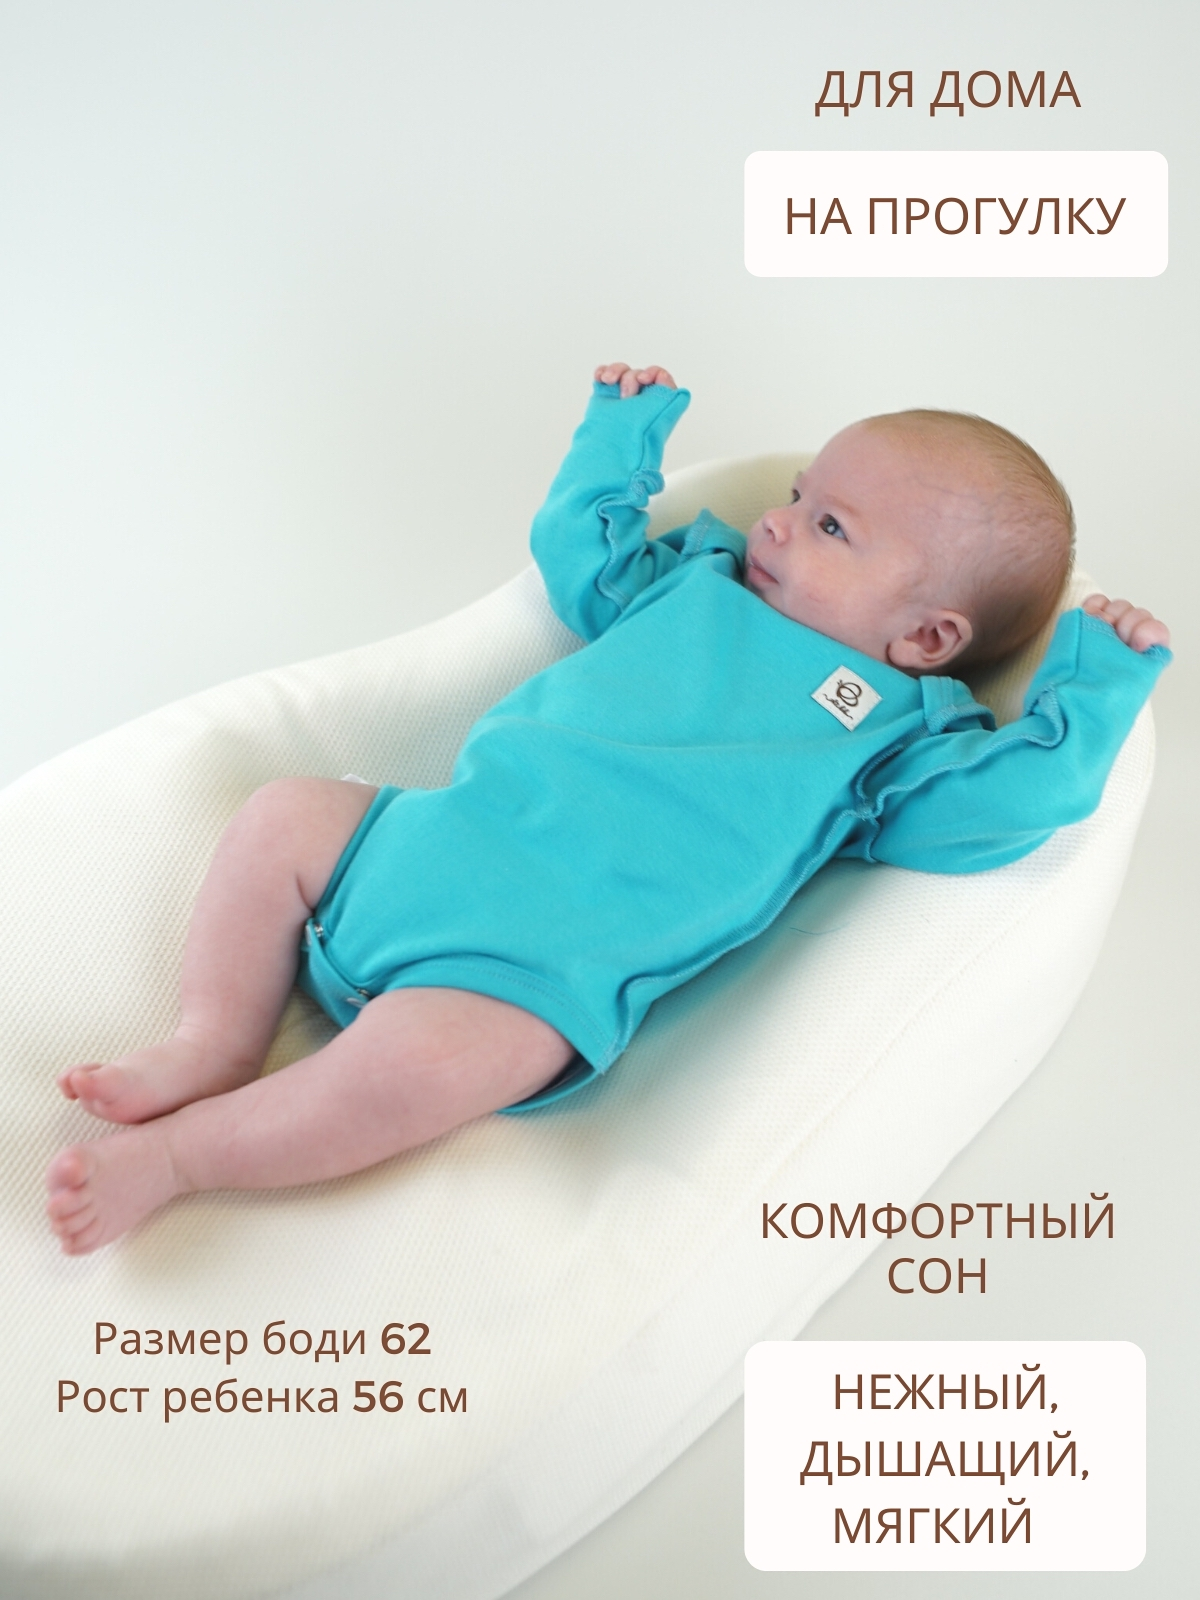 Бодик для малышей → Боди для новорожденного → от 0 до 6 мес